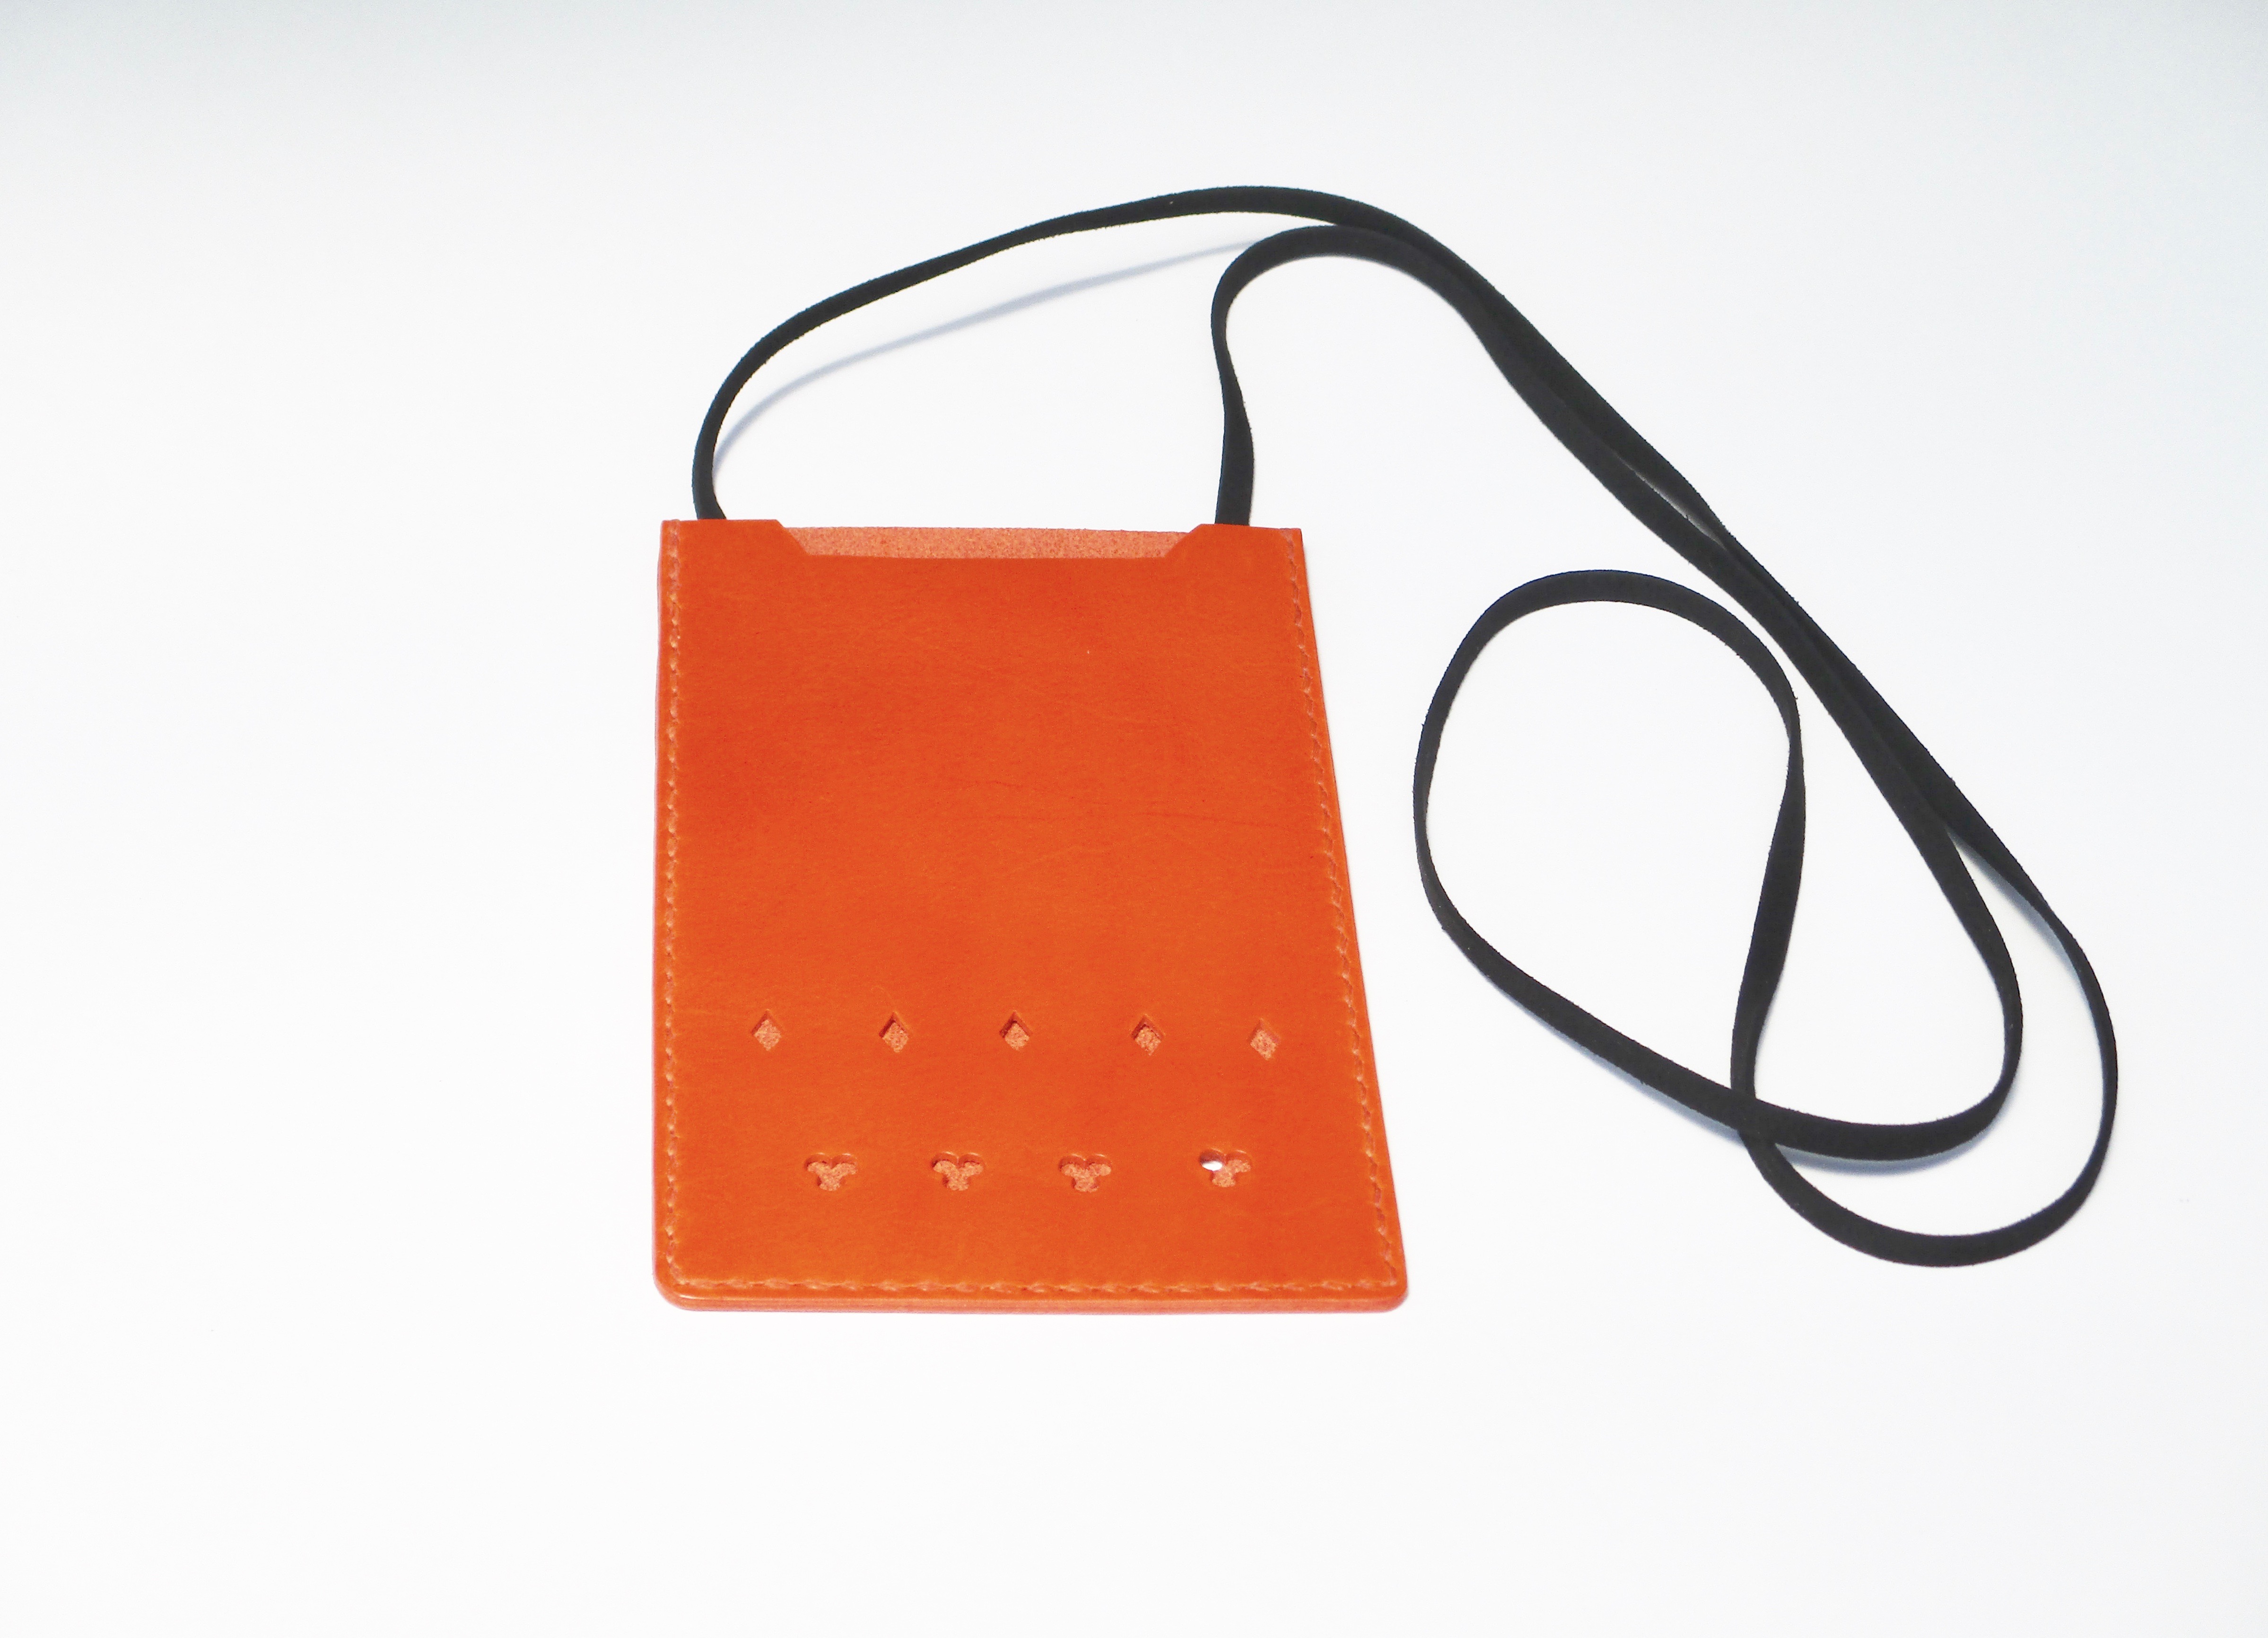 イタリア革ブッテーロのスマホポシェット オレンジ色 No 2 Iichi ハンドメイド クラフト作品 手仕事品の通販